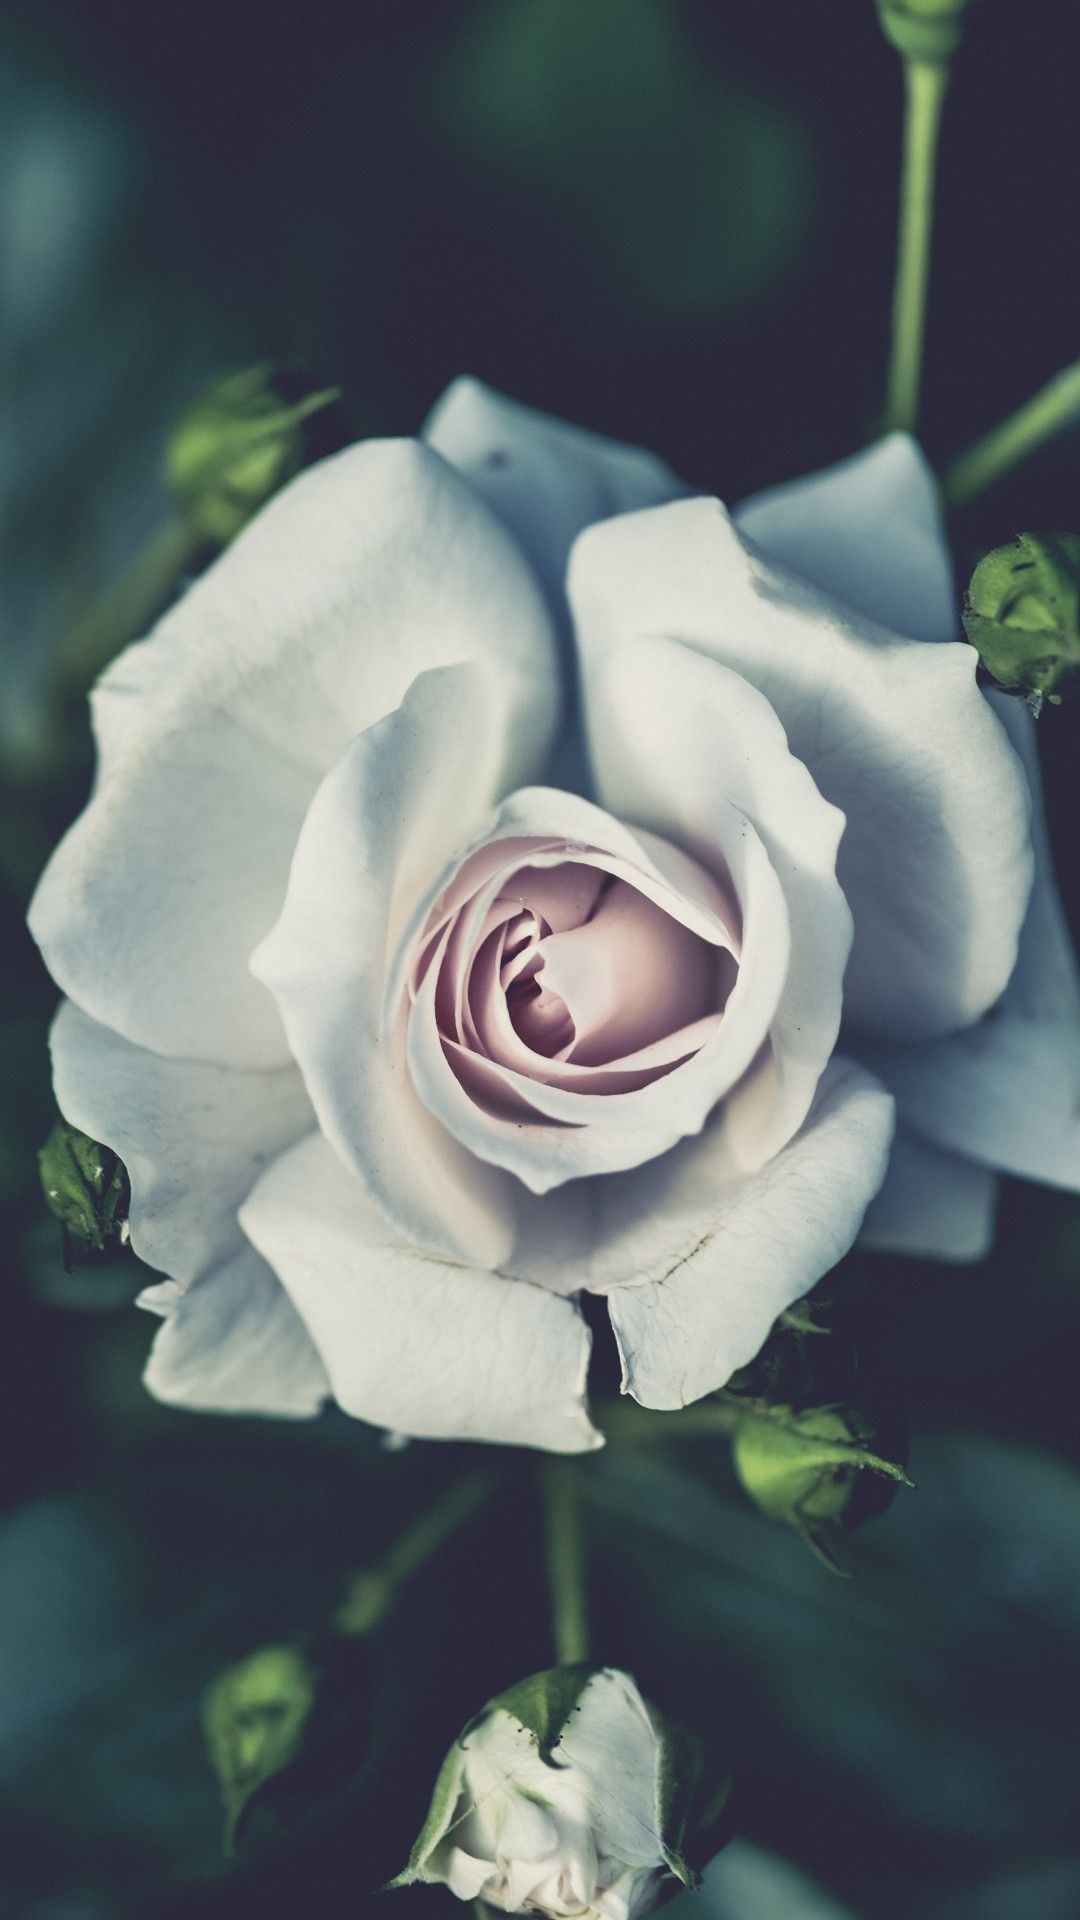 Những bông hoa hồng trắng mỏng manh và thơm ngát luôn là biểu tượng của tình yêu và sự thuần khiết. Hãy chiêm ngưỡng hình ảnh những bông hoa này và cảm nhận rằng tình yêu luôn đẹp và trong sáng như những bông hoa hồng trắng.